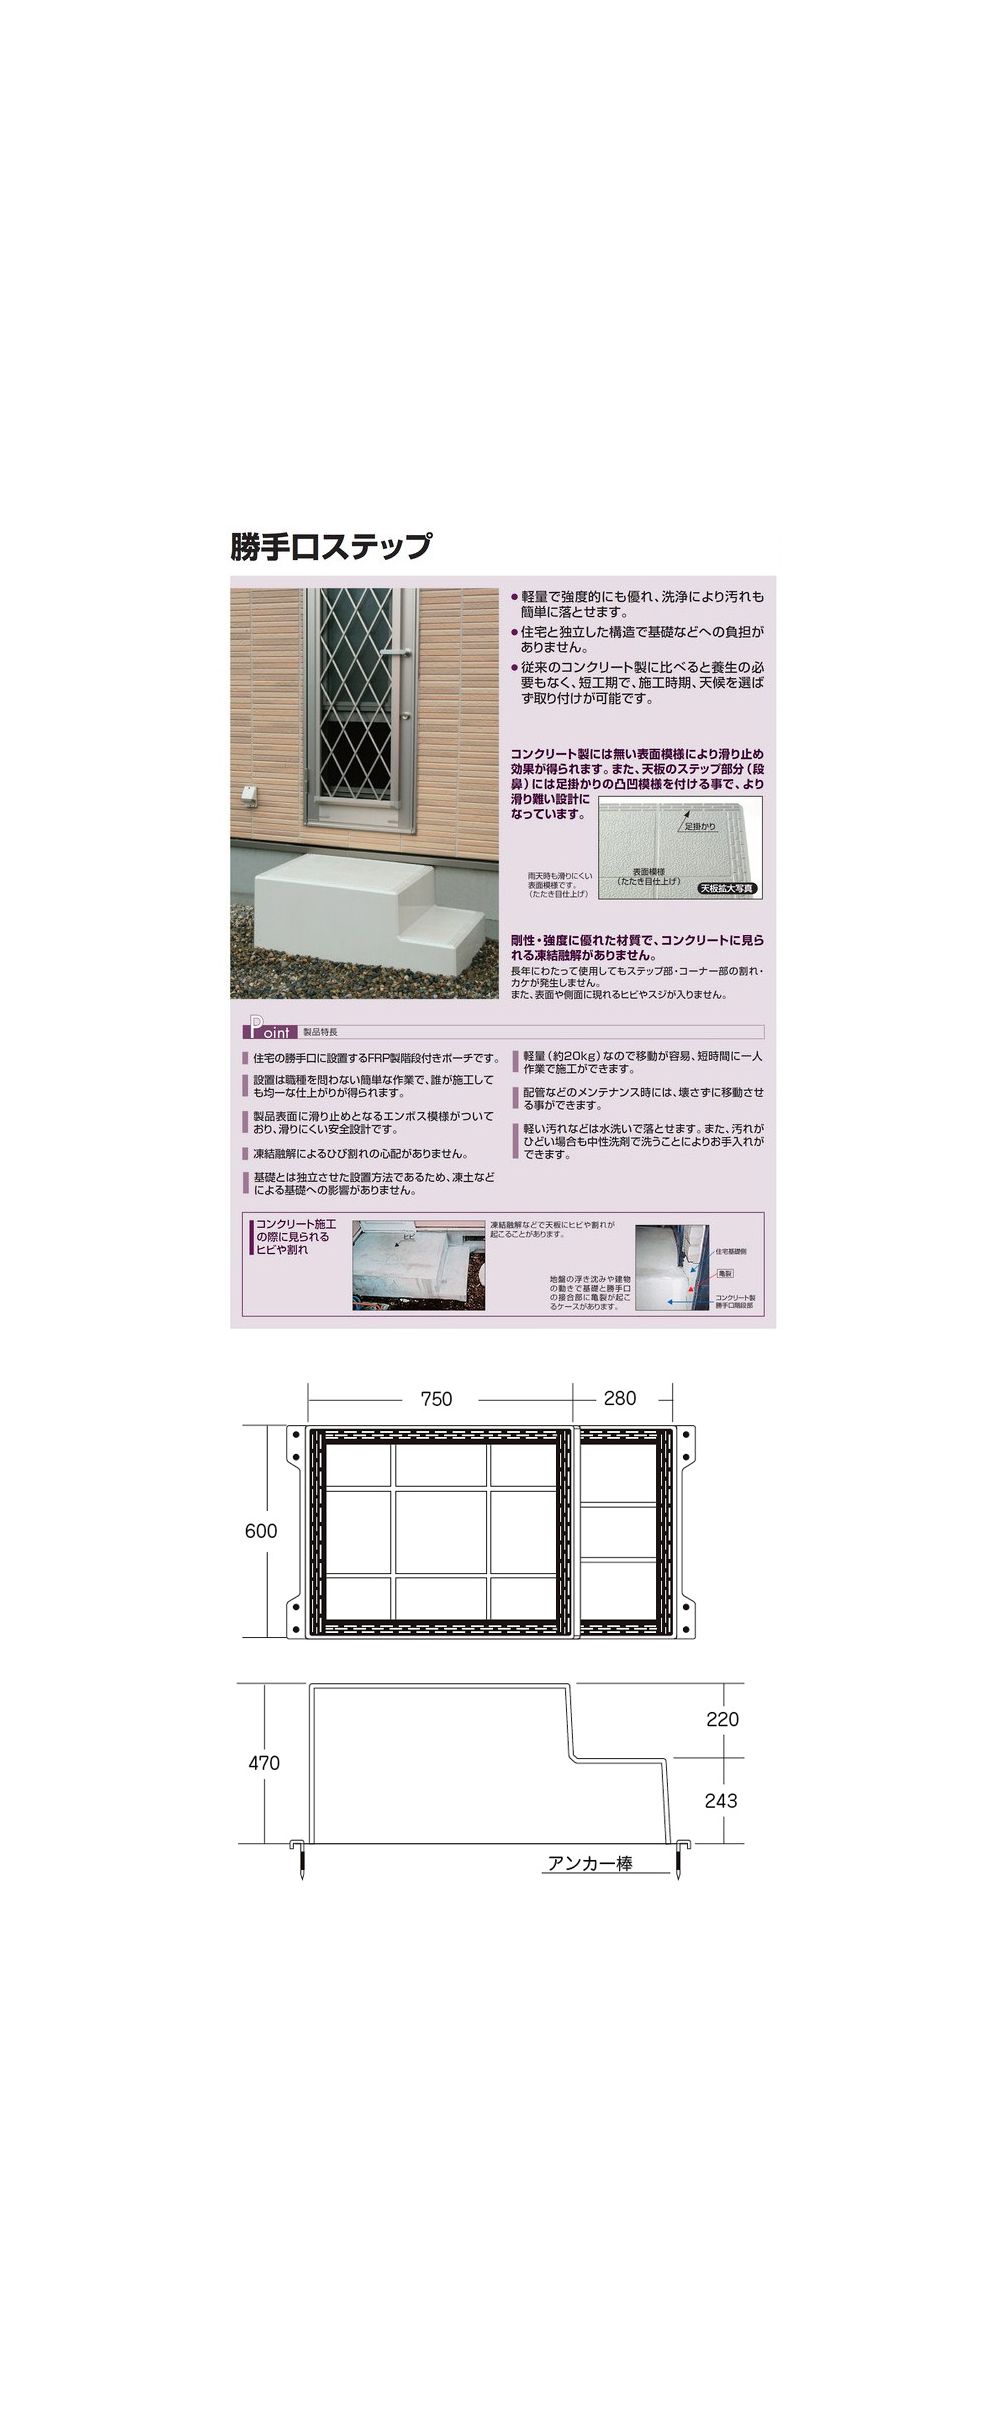 タキロンシーアイ 勝手口ステップ 2段式 S602n型 匠の一冊 公式通販サイト